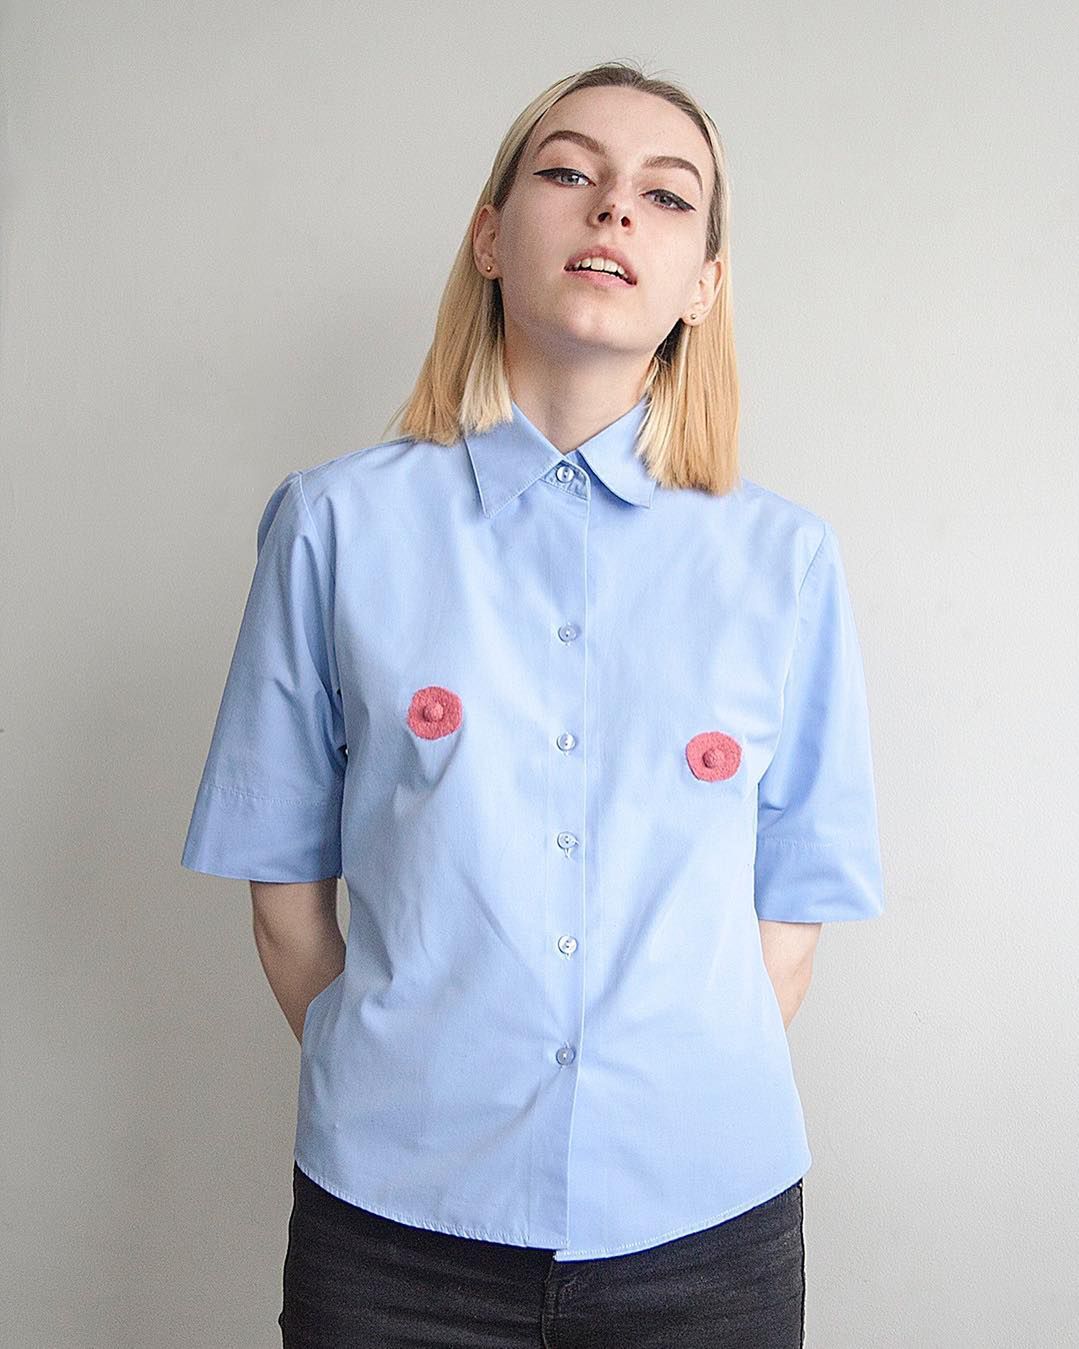 Koszula z sutkami. Modowa klasyka z feministycznym twistem?